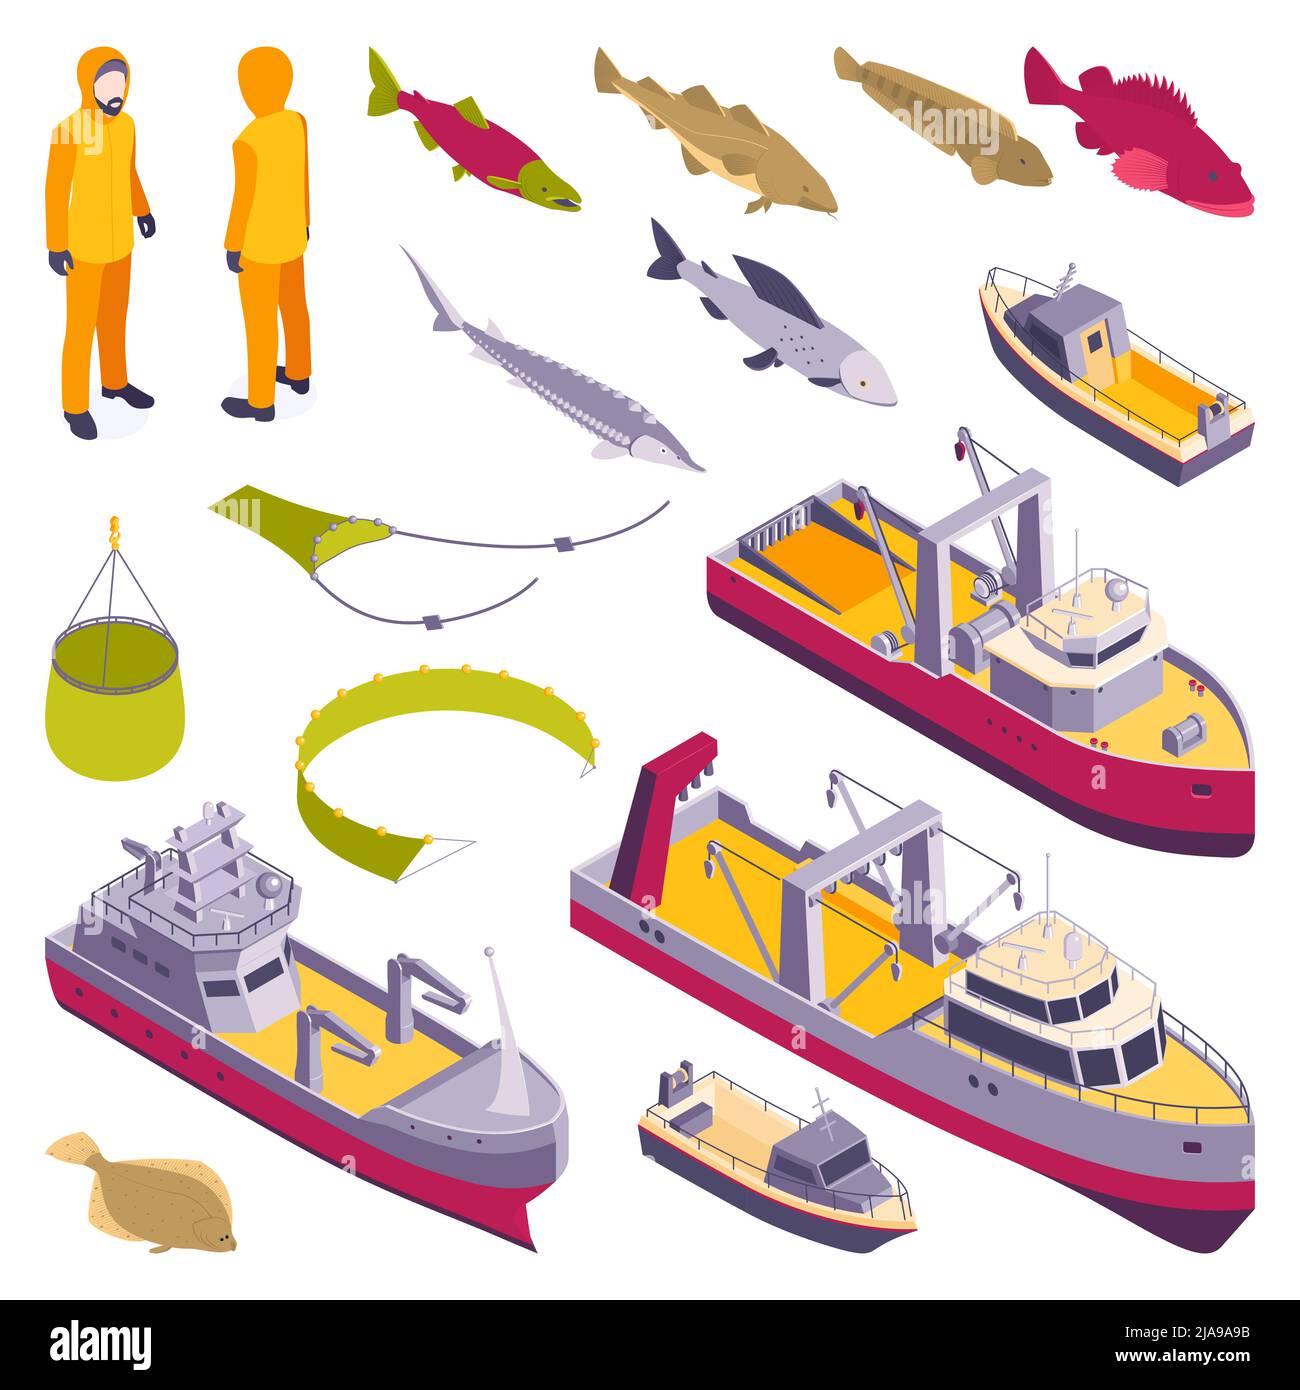 Kommerzielle Fischerei isometrischen Satz von Fluss Ozean- und Seefischerschiffe Boote und Trawler isoliert Vektor-Illustration Stock Vektor